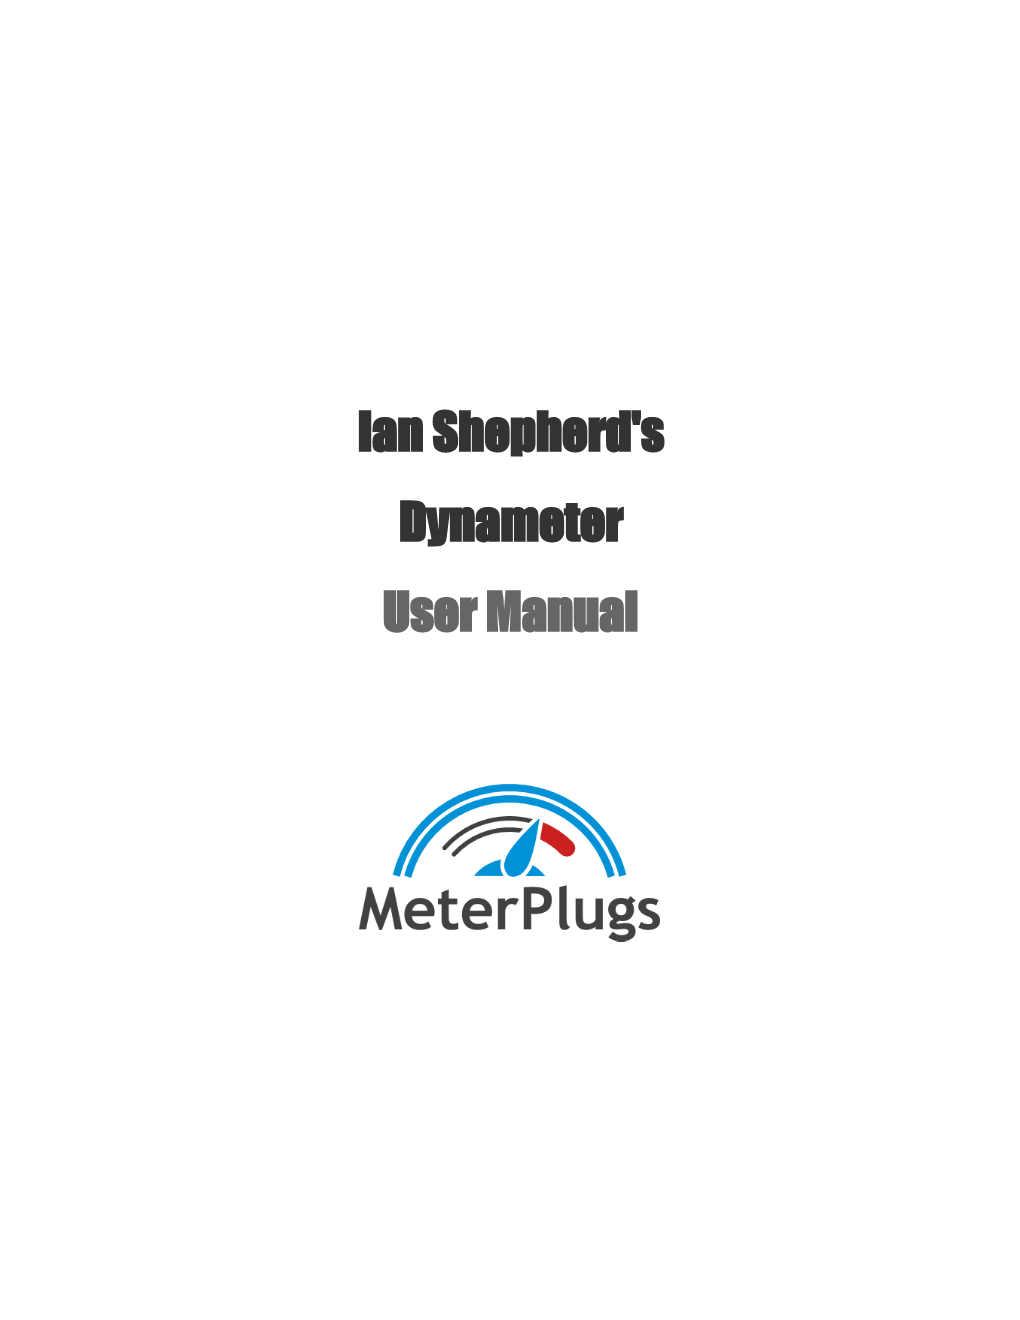 Ian Shepherd's Dynameter User Manual